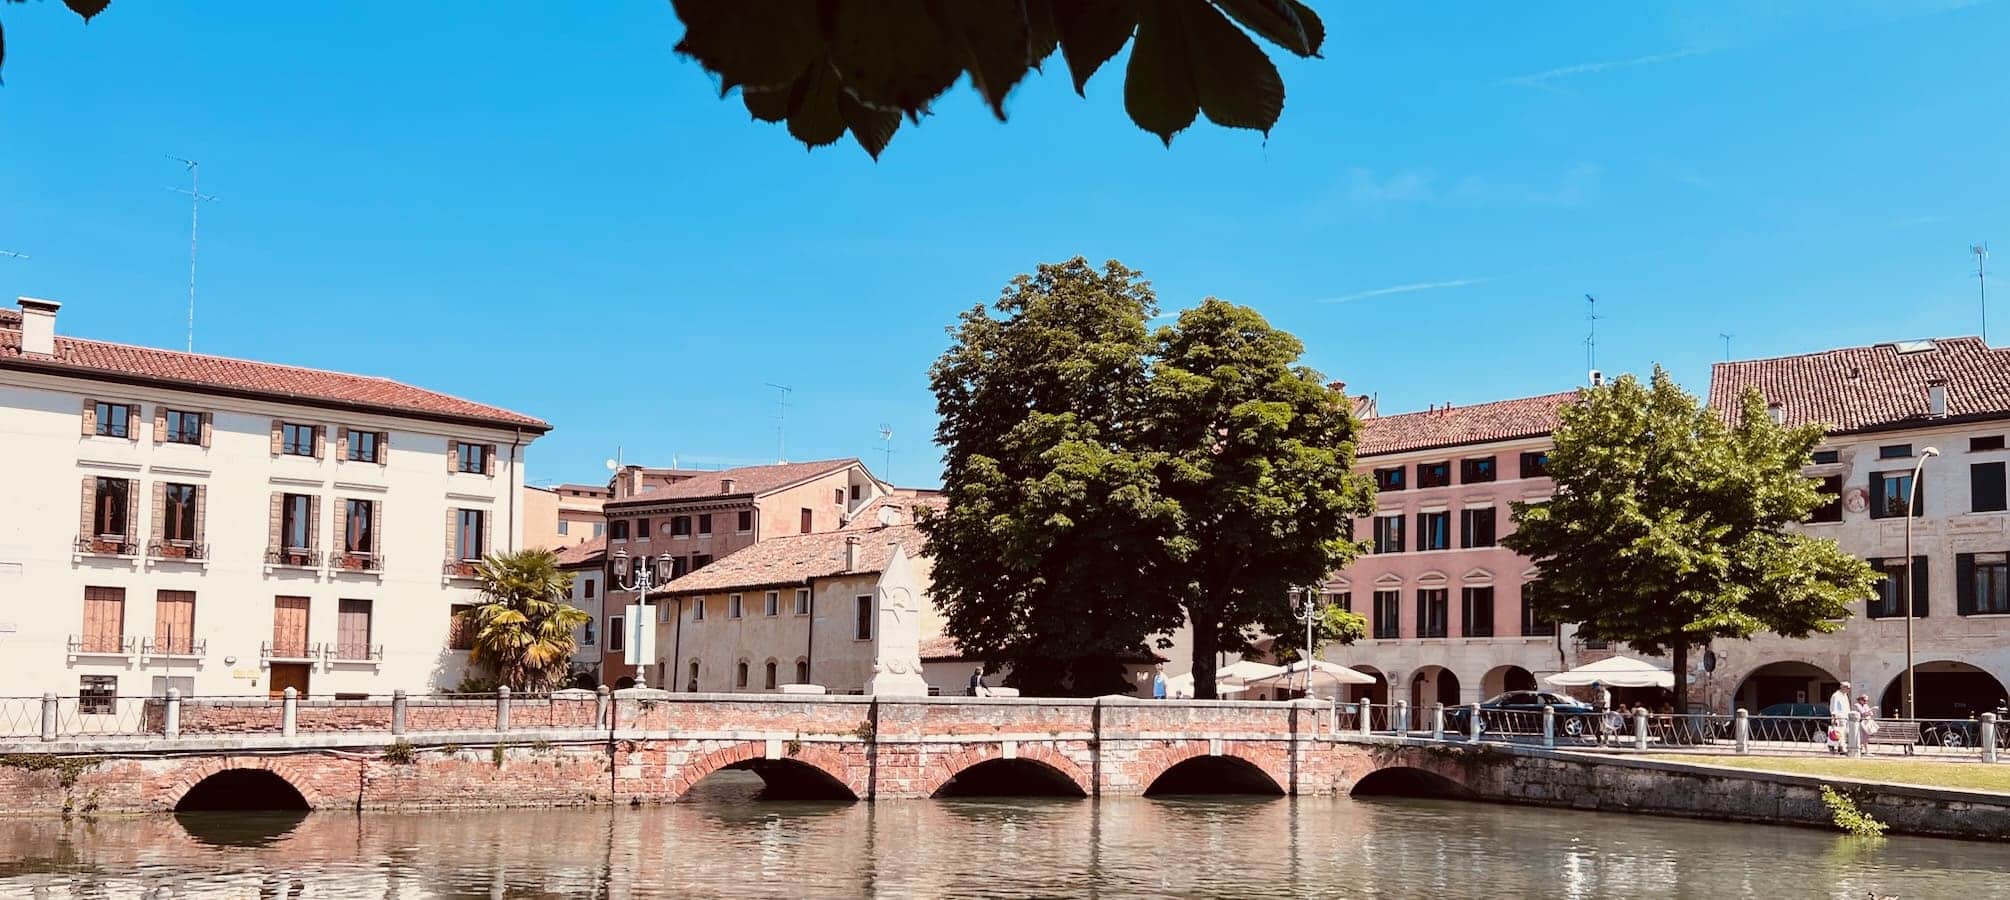 Treviso-Panorama